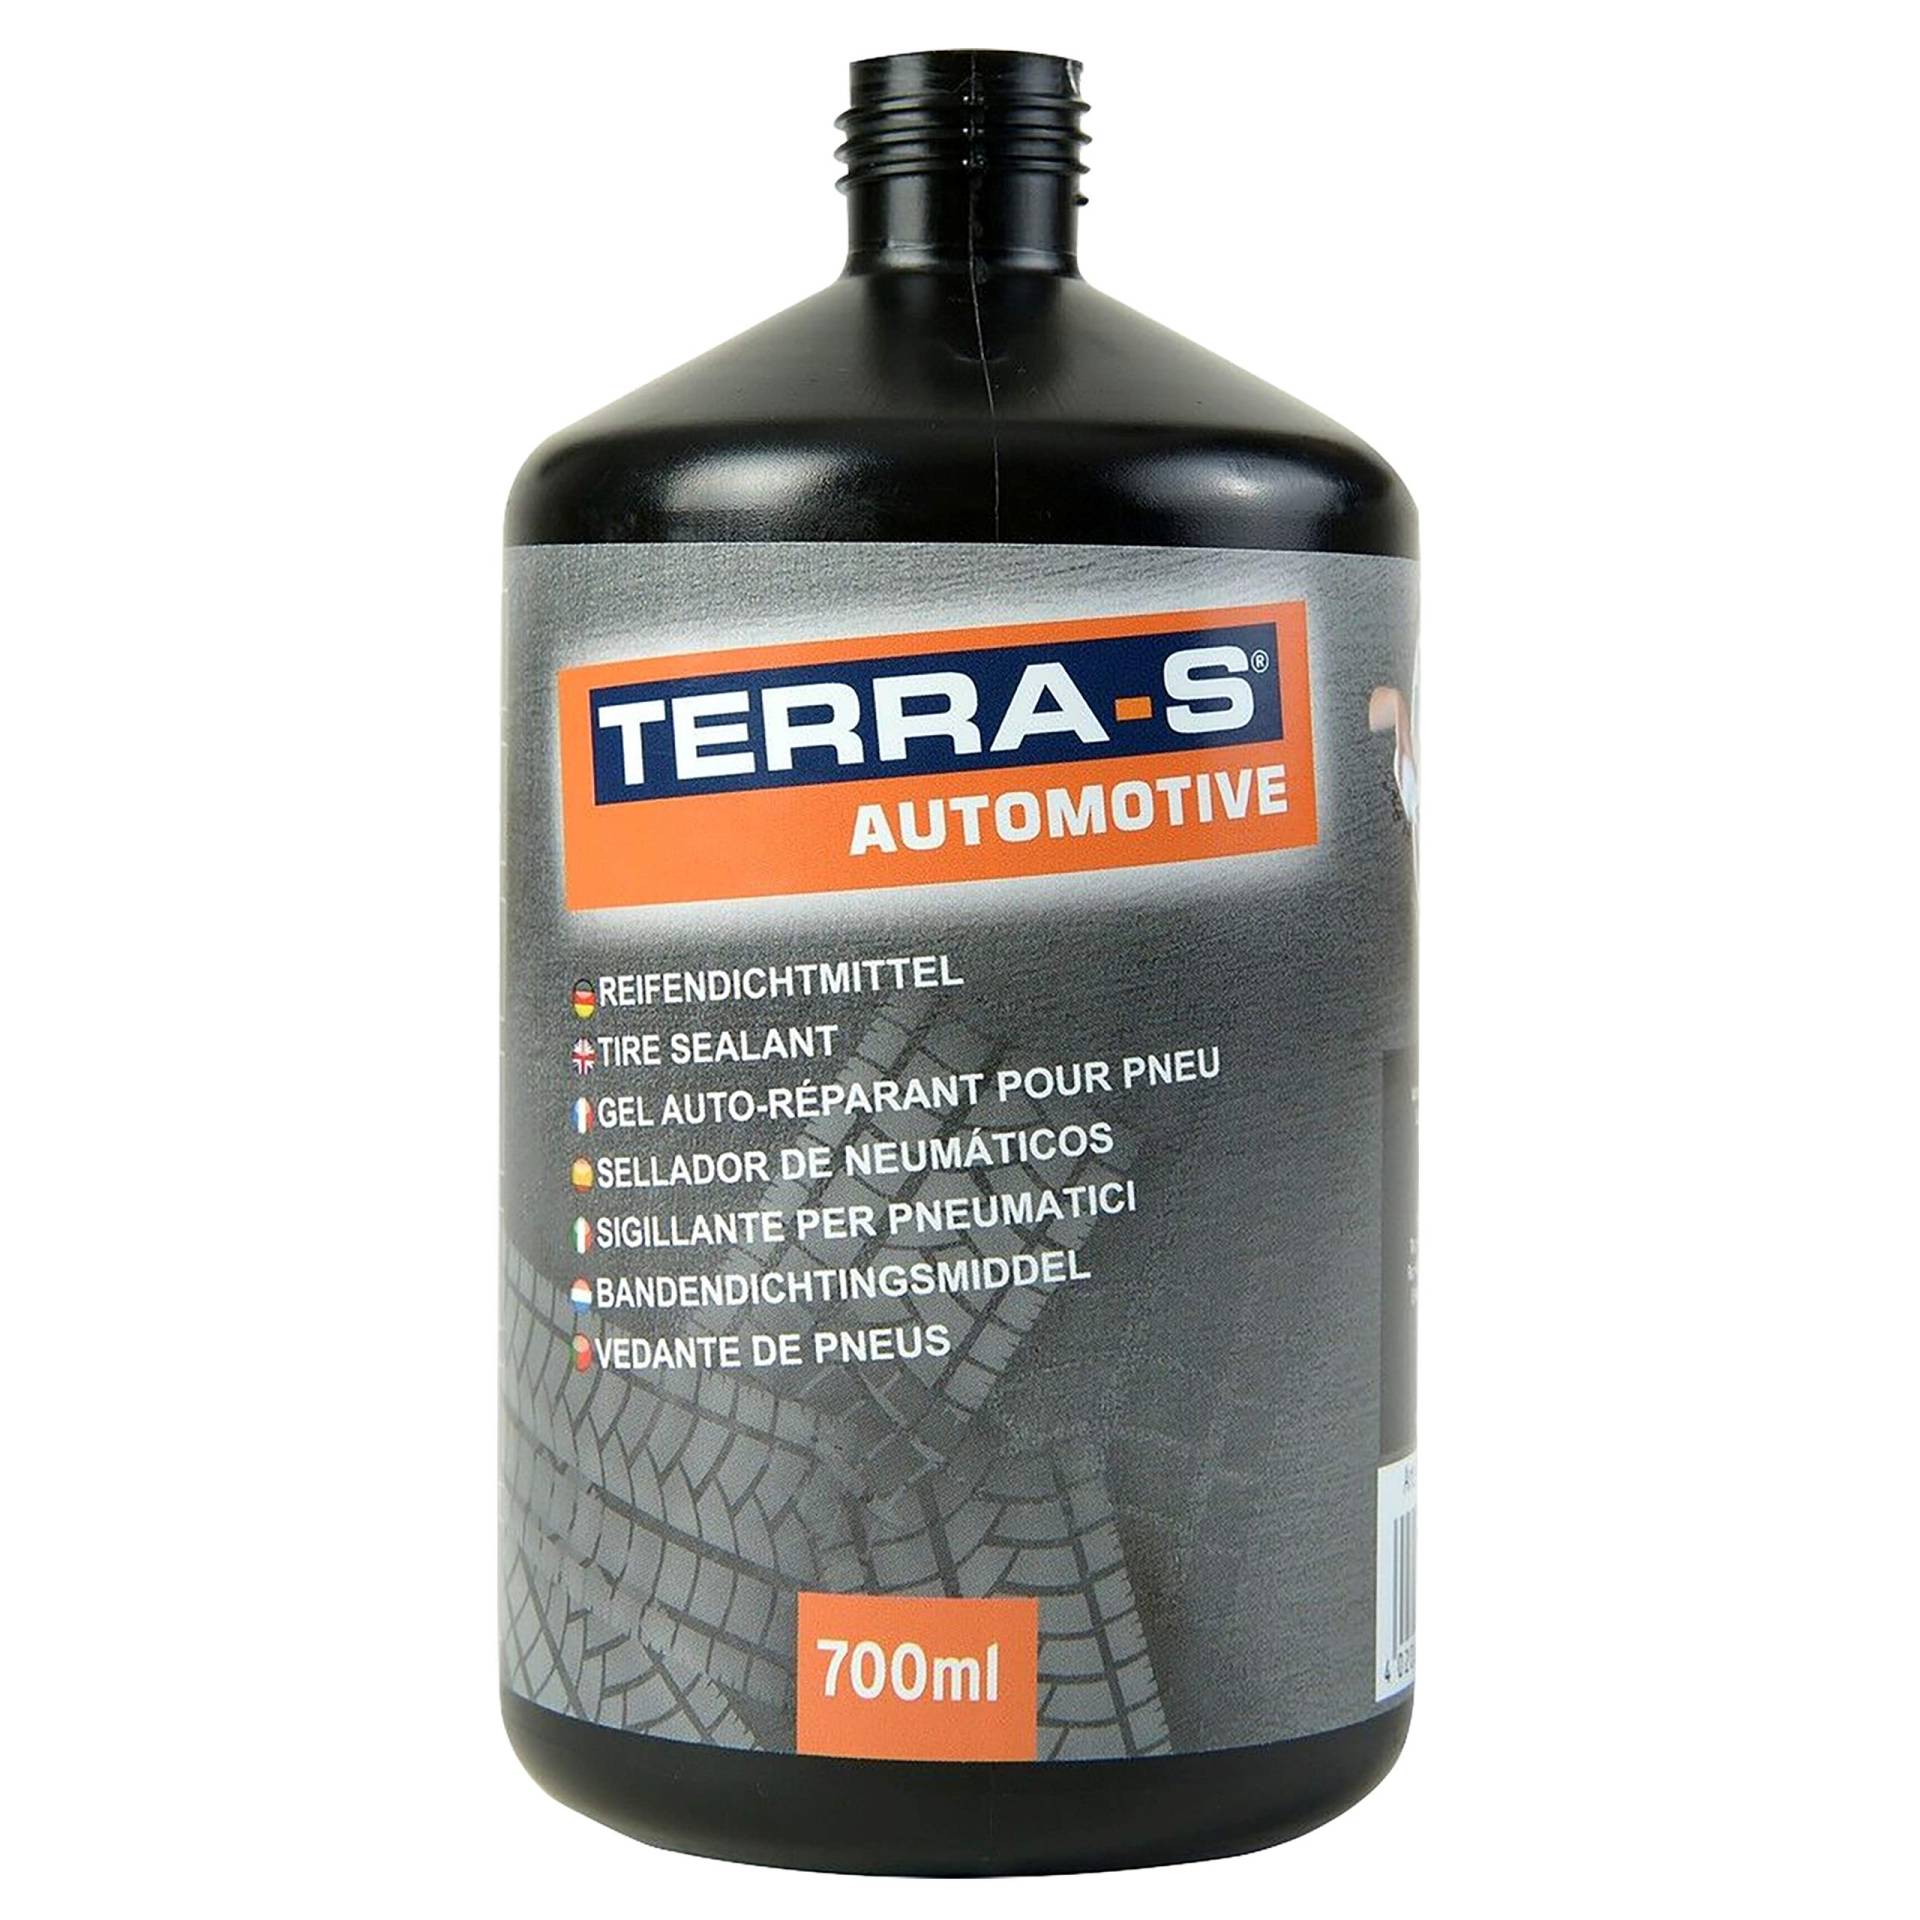 TerraS Reifendichtgel zu Pannen - Set 700 ml von ITW